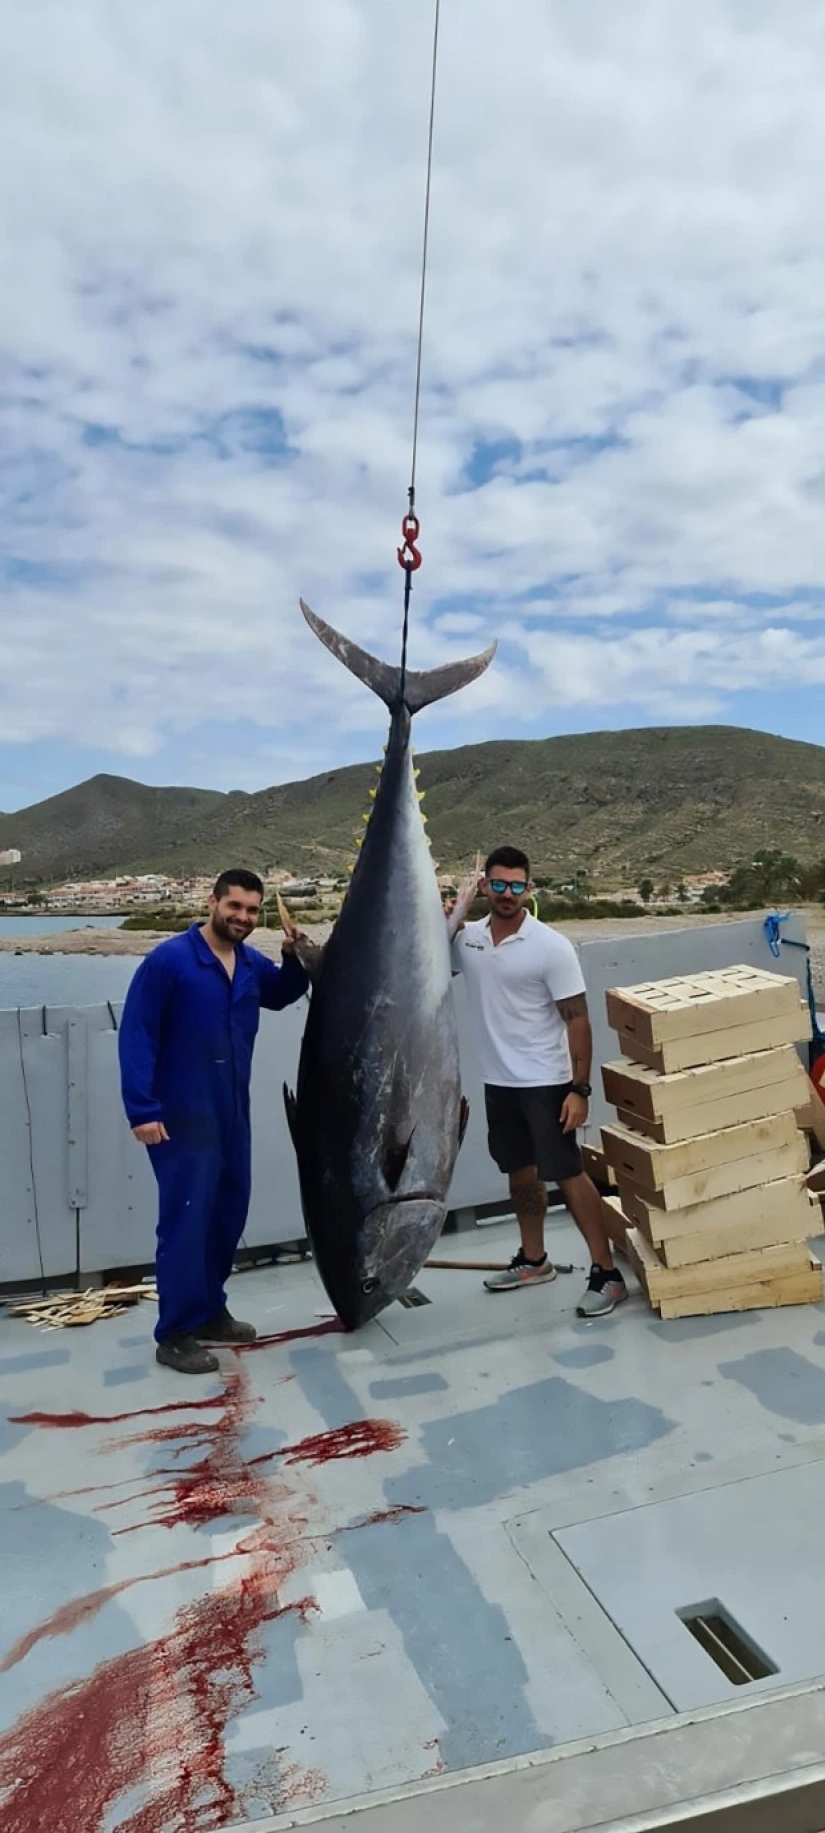 Spanish fishermen have caught tuna-champion